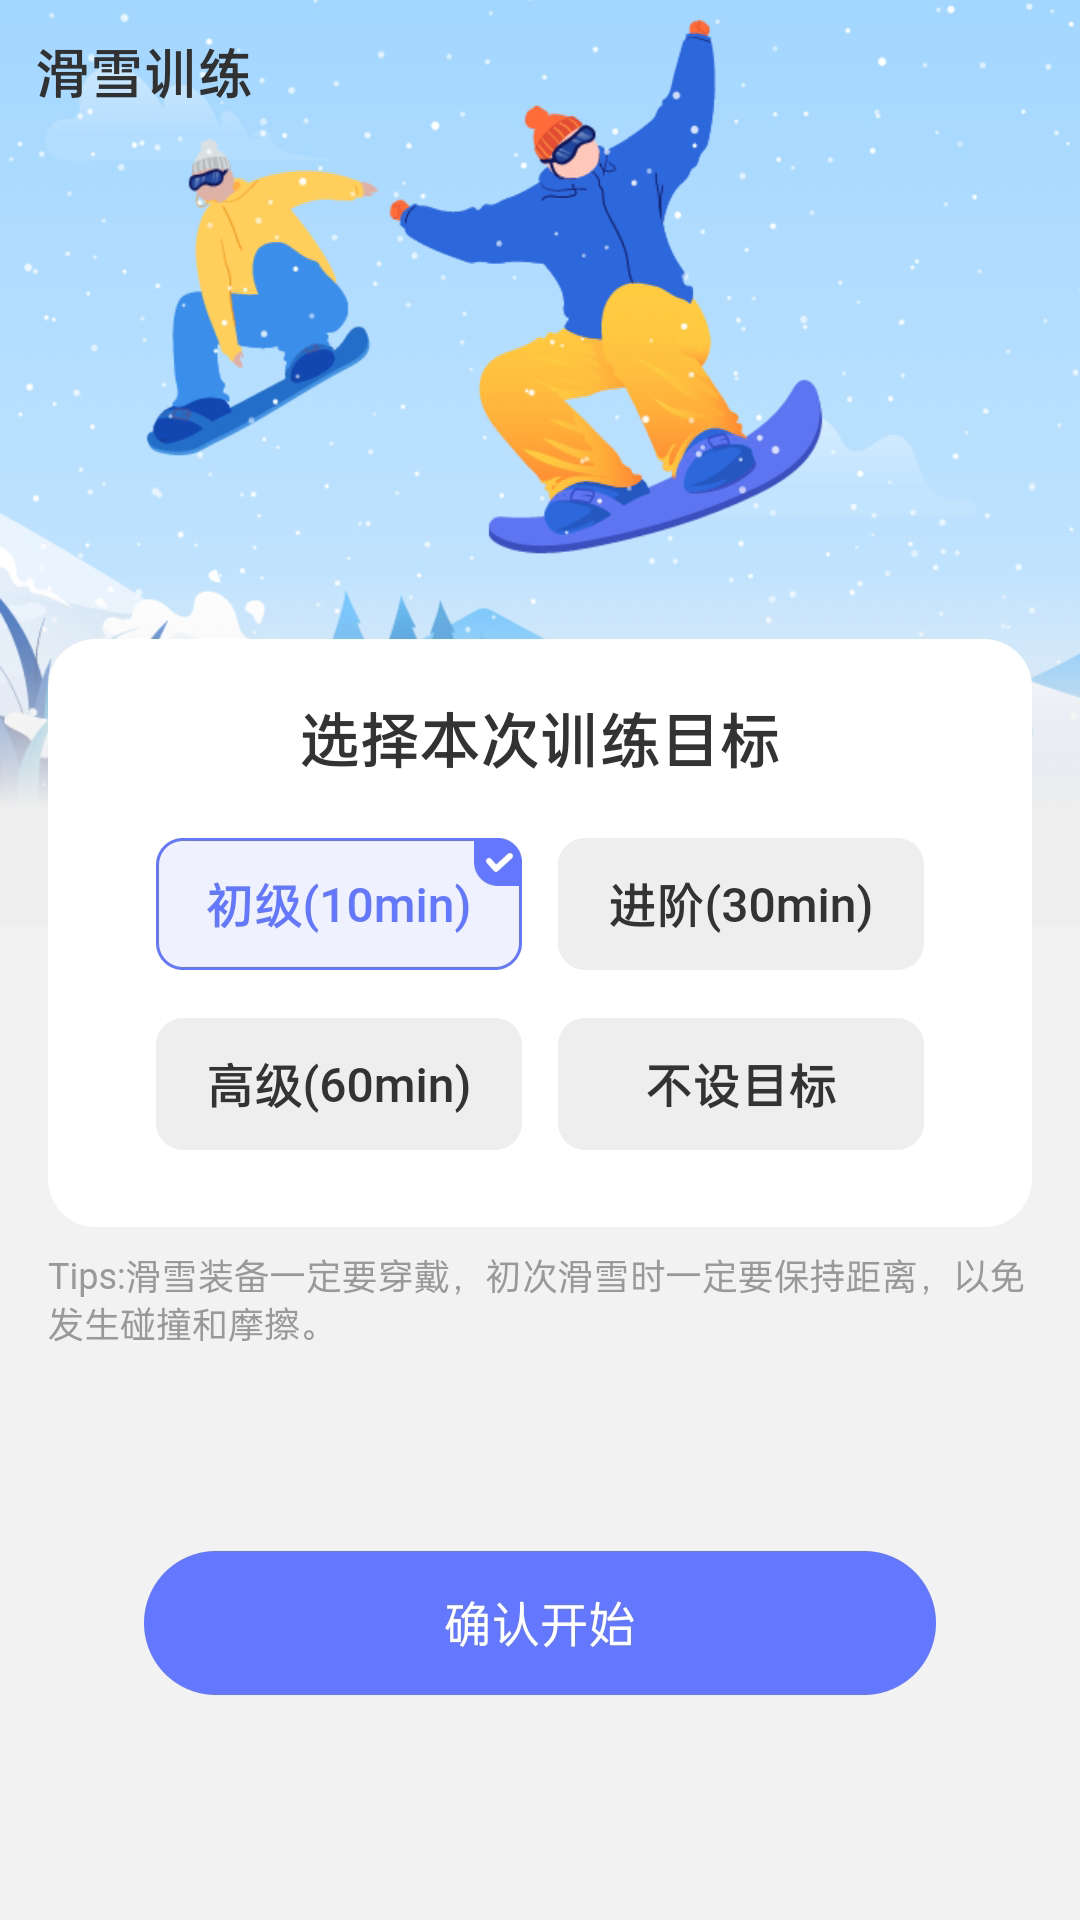 冰川快行滑雪运动app最新版图片1